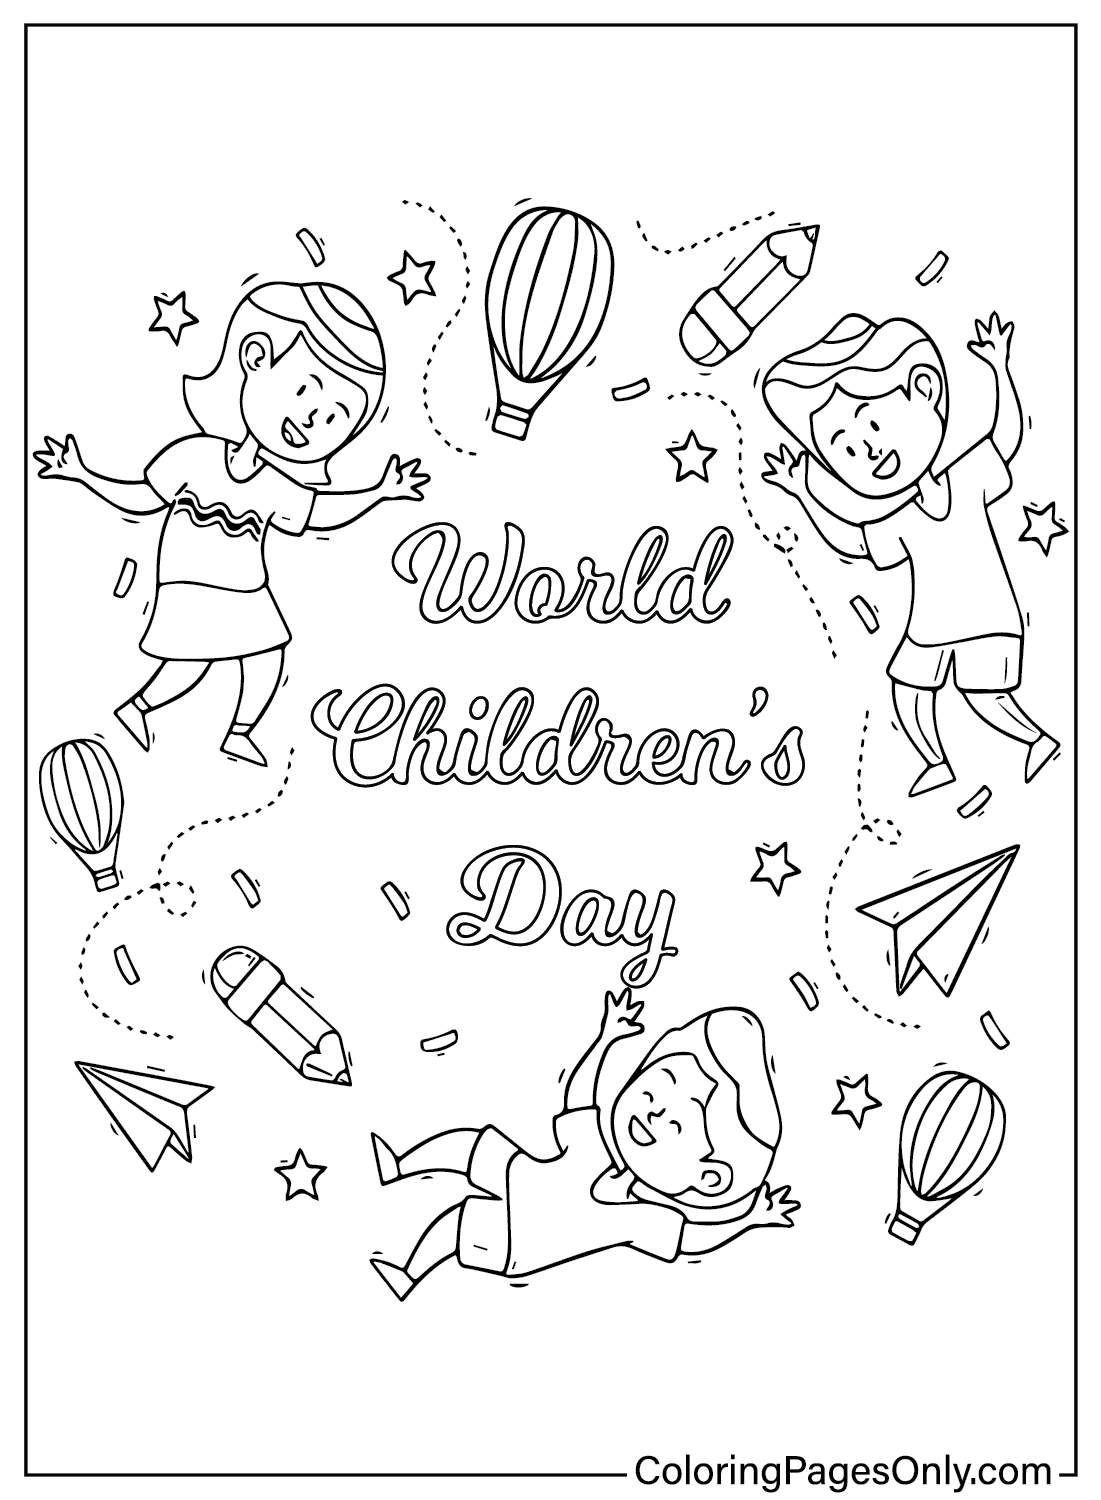 Página en color del Día Mundial del Niño del Día del Niño